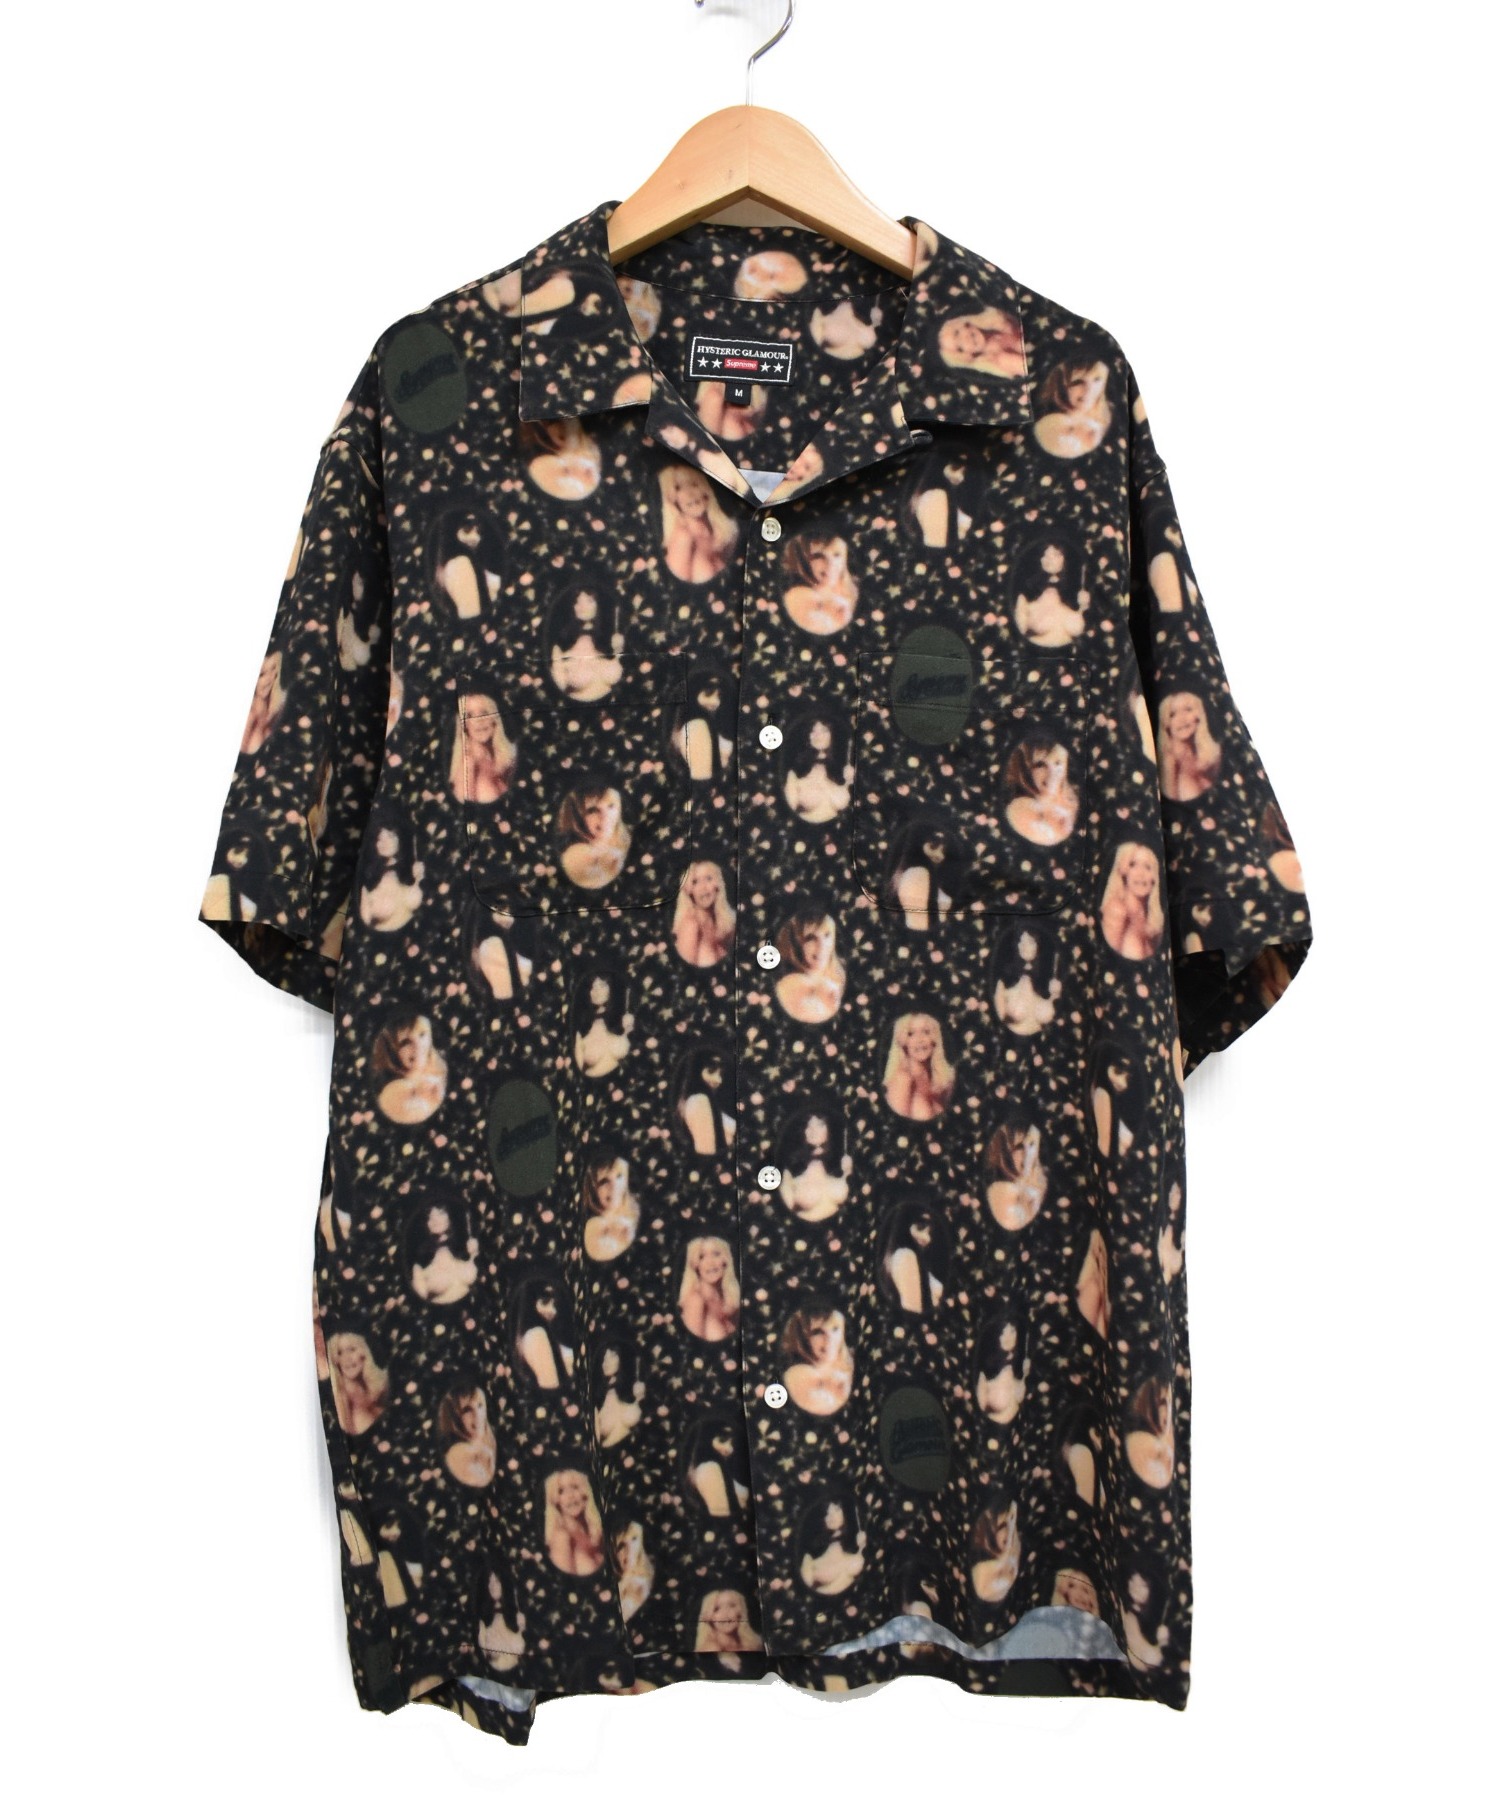 Supreme×HYSTERICGLAMOUR (シュプリーム×ヒステリックグラマー) ブラードガールレーヨンシャツ ブラック サイズ:M 21SS  Blurred Girls Rayon S/S Shirts